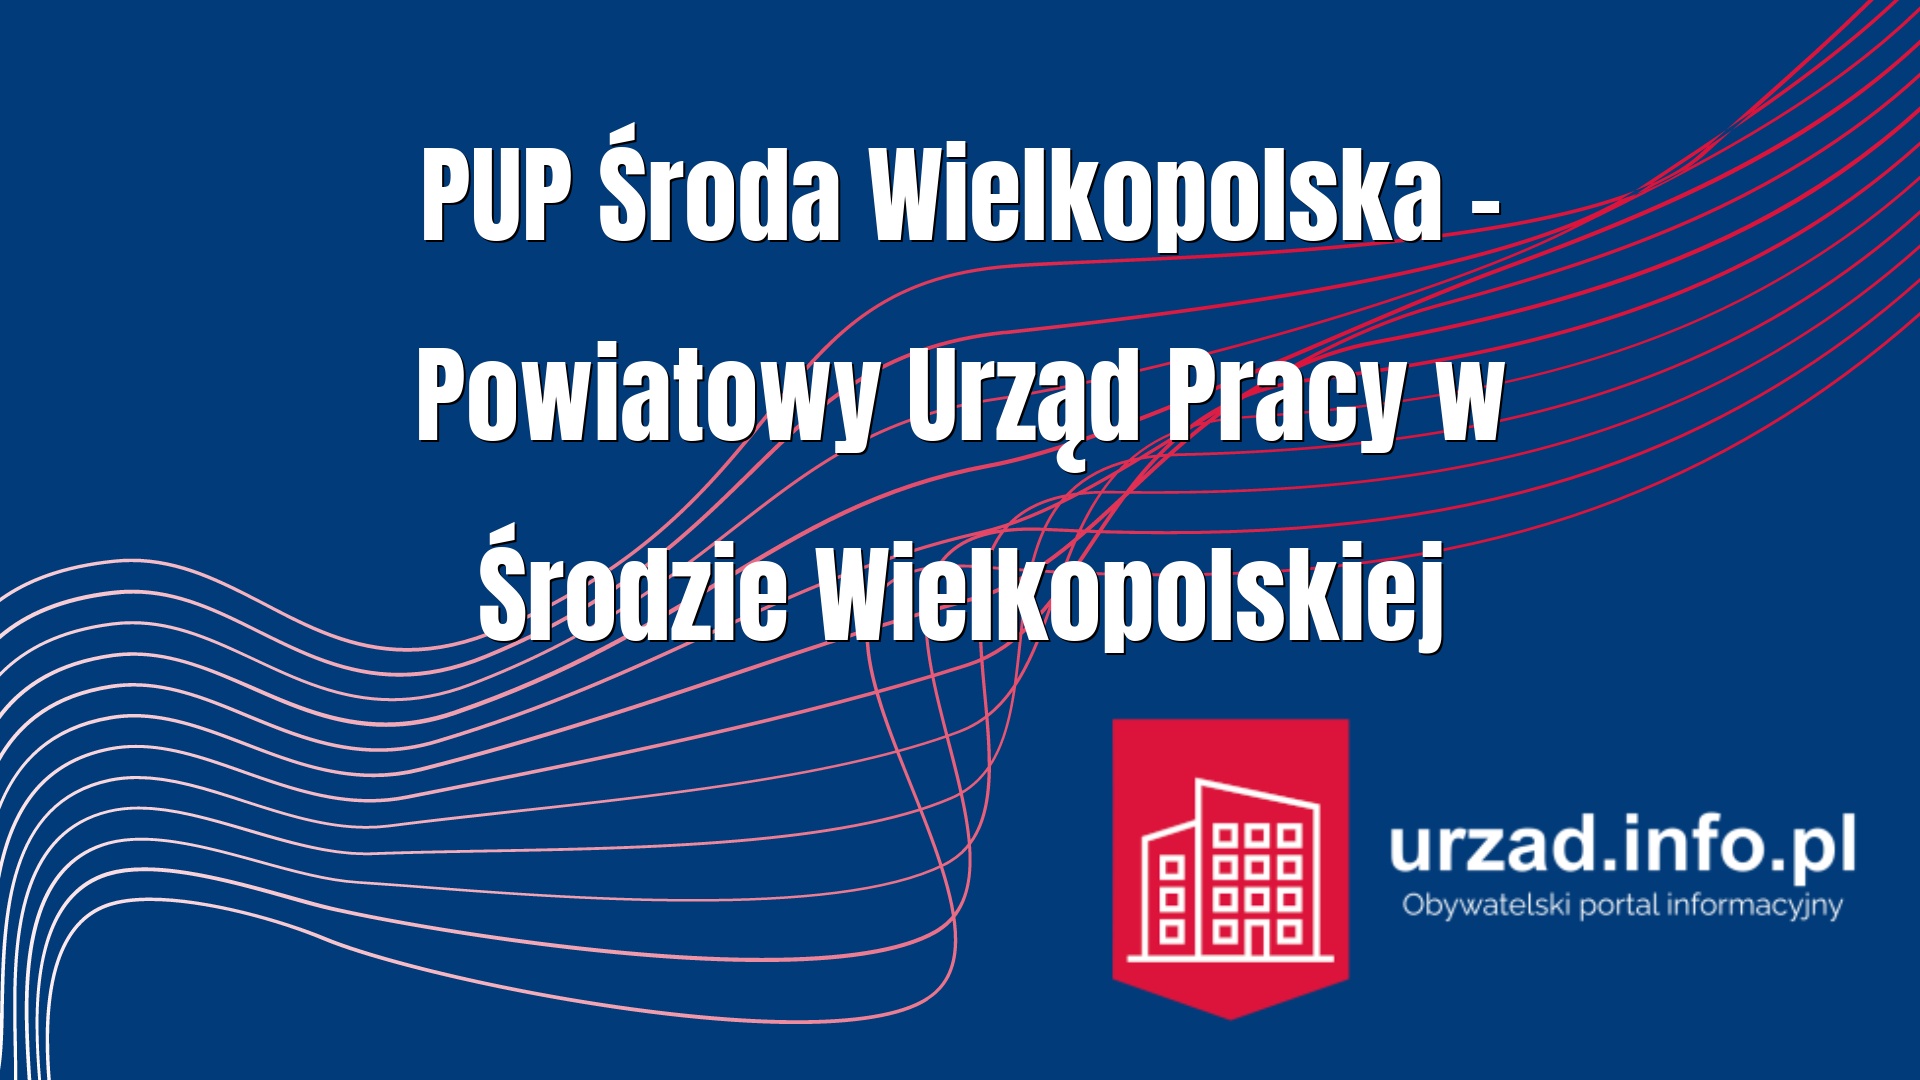 PUP Środa Wielkopolska – Powiatowy Urząd Pracy w Środzie Wielkopolskiej